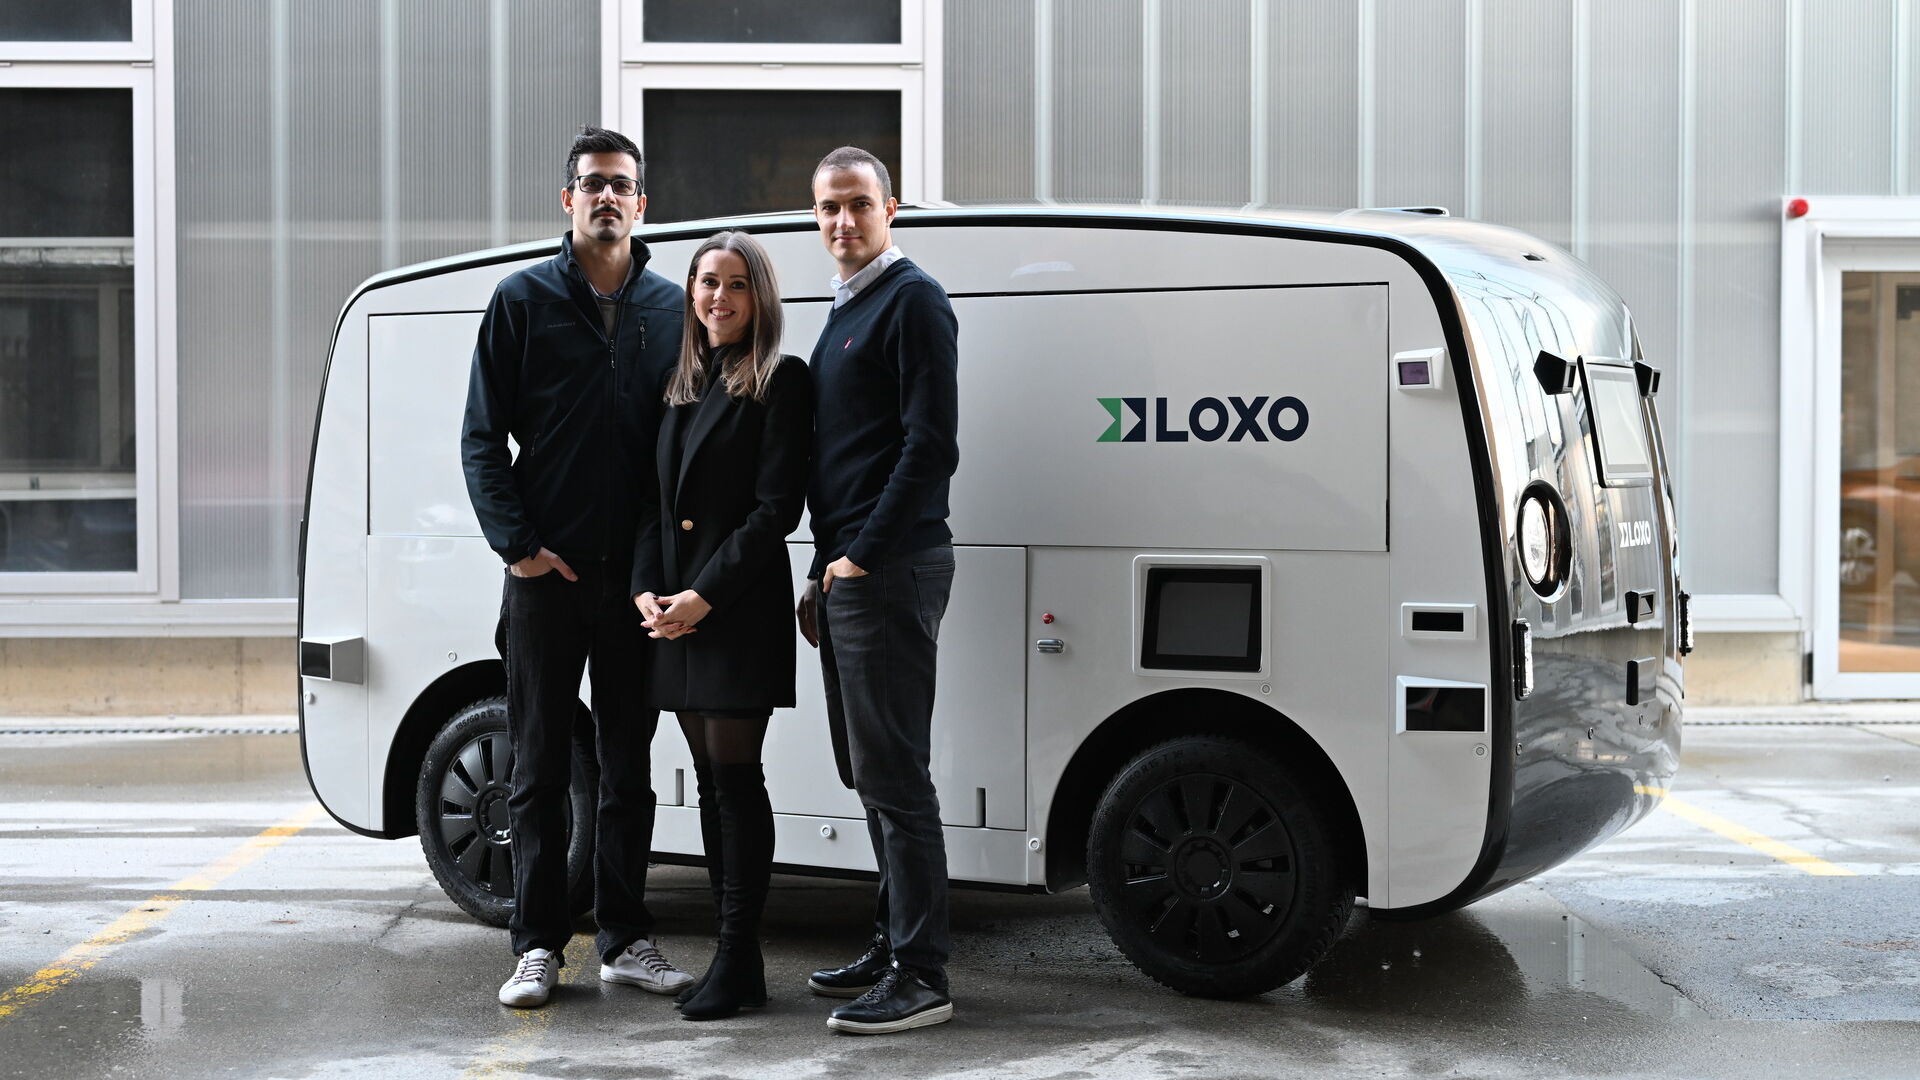 LOXO: Amin Amini, Lara Amini-Rentsch e Claudio Panizza, fondatori della start-up bernese LOXO, hanno realizzato Alpha interamente in Svizzera, un furgone a guida autonoma per le consegne brevi